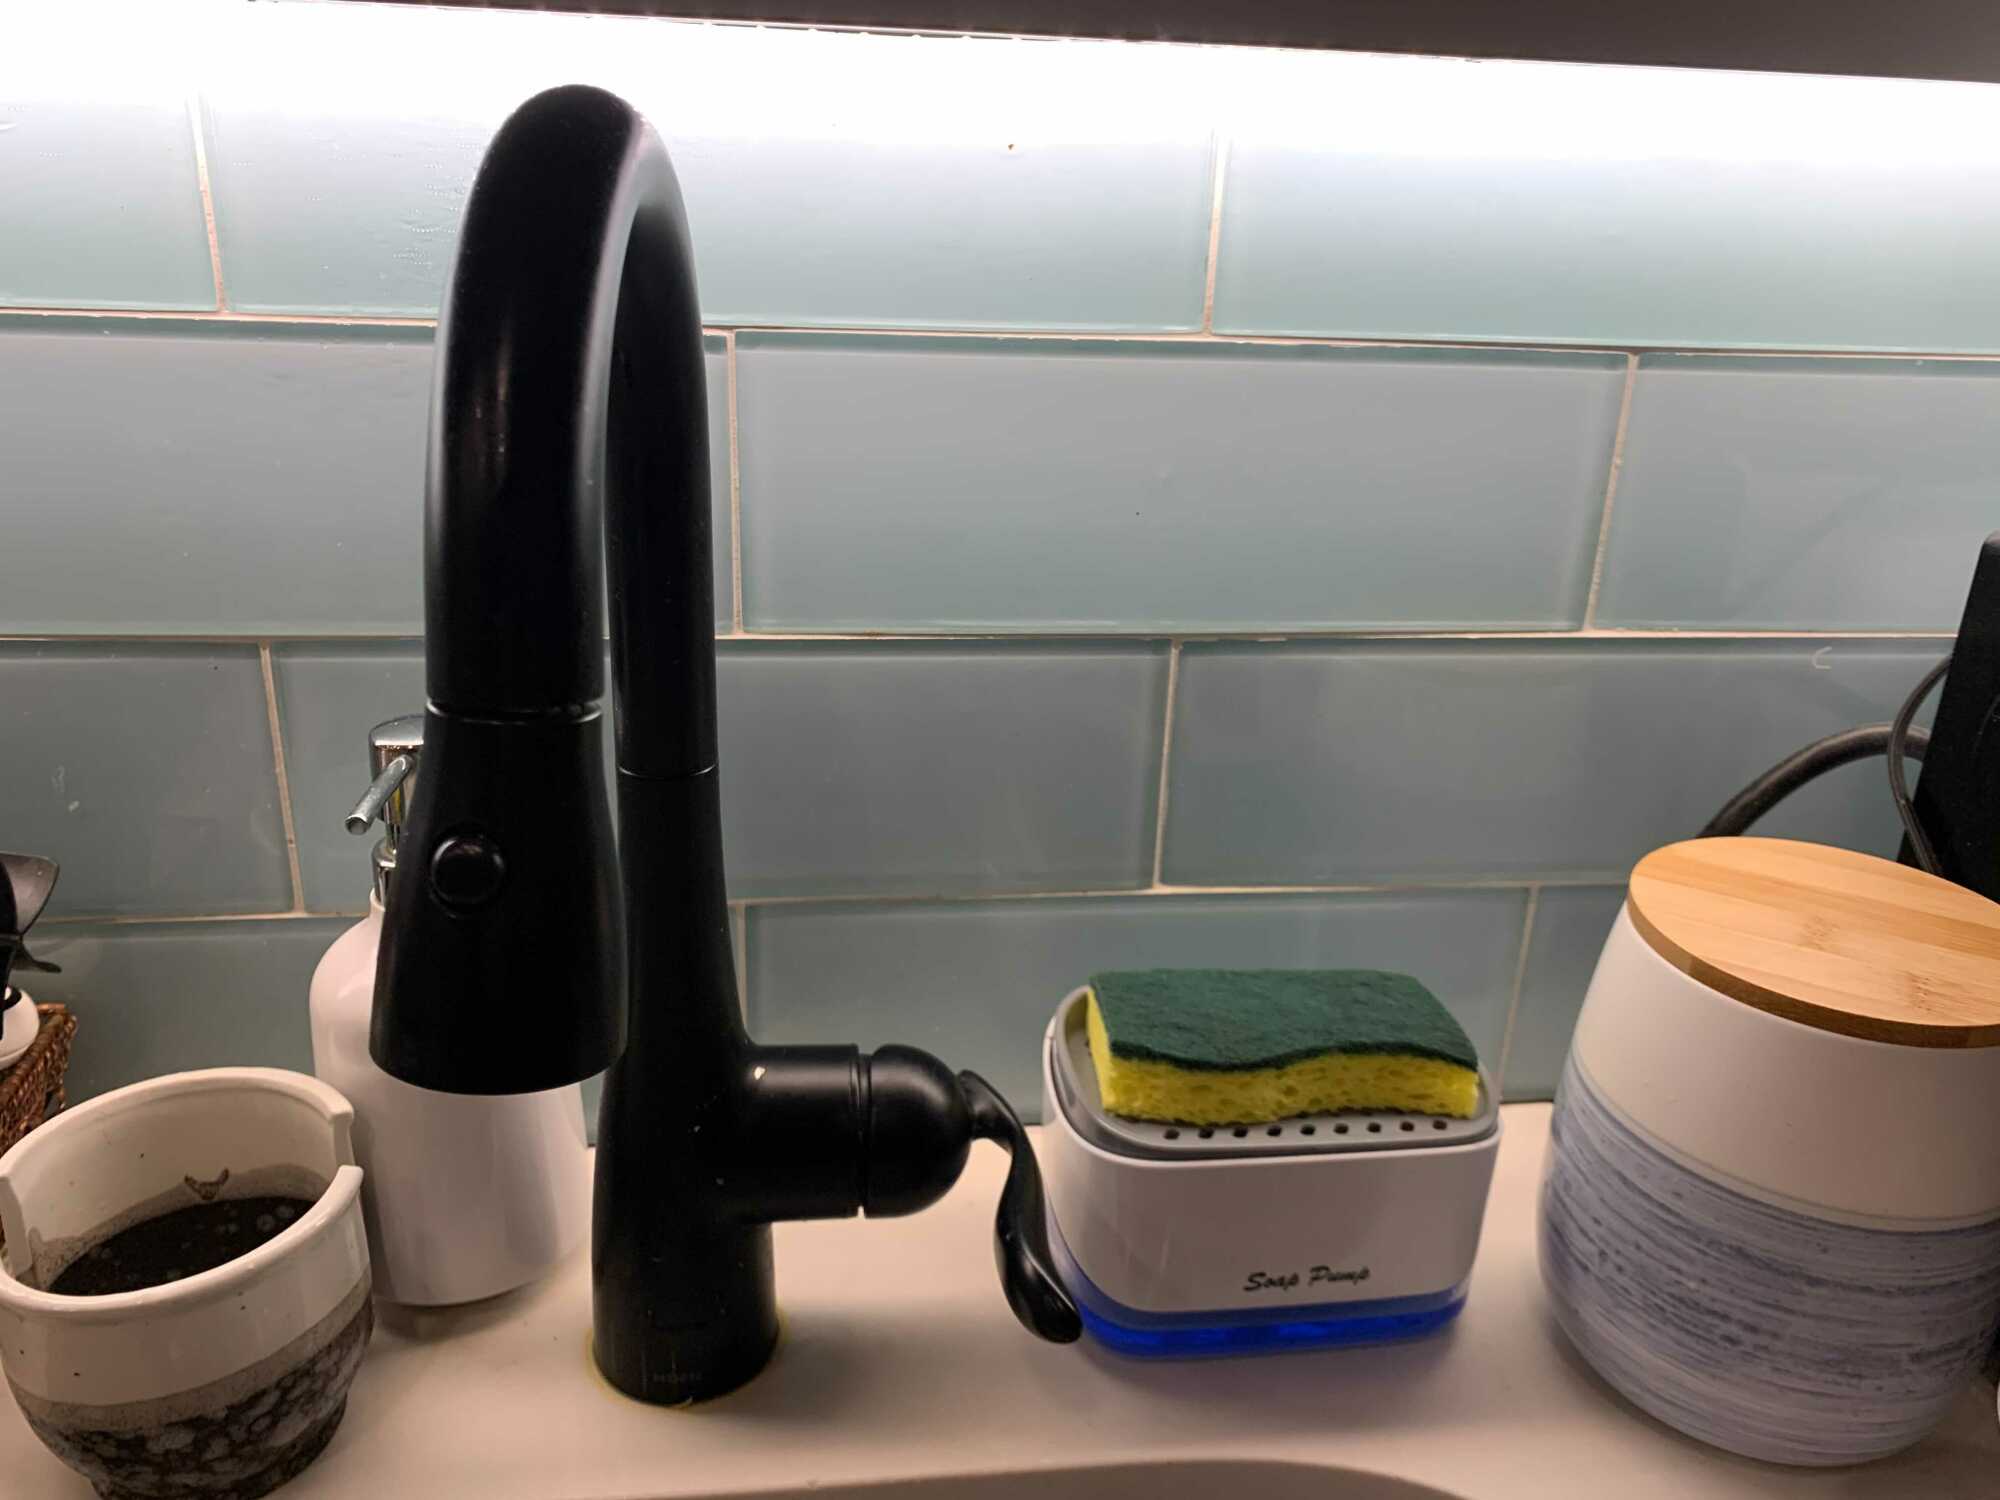 Mi configuración durante esta prueba: un carrito de esponja pequeño vacío, un dispensador de jabón y un carrito dispensador de jabón.  El frasco del extremo derecho contiene mi café, en caso de que sienta curiosidad.